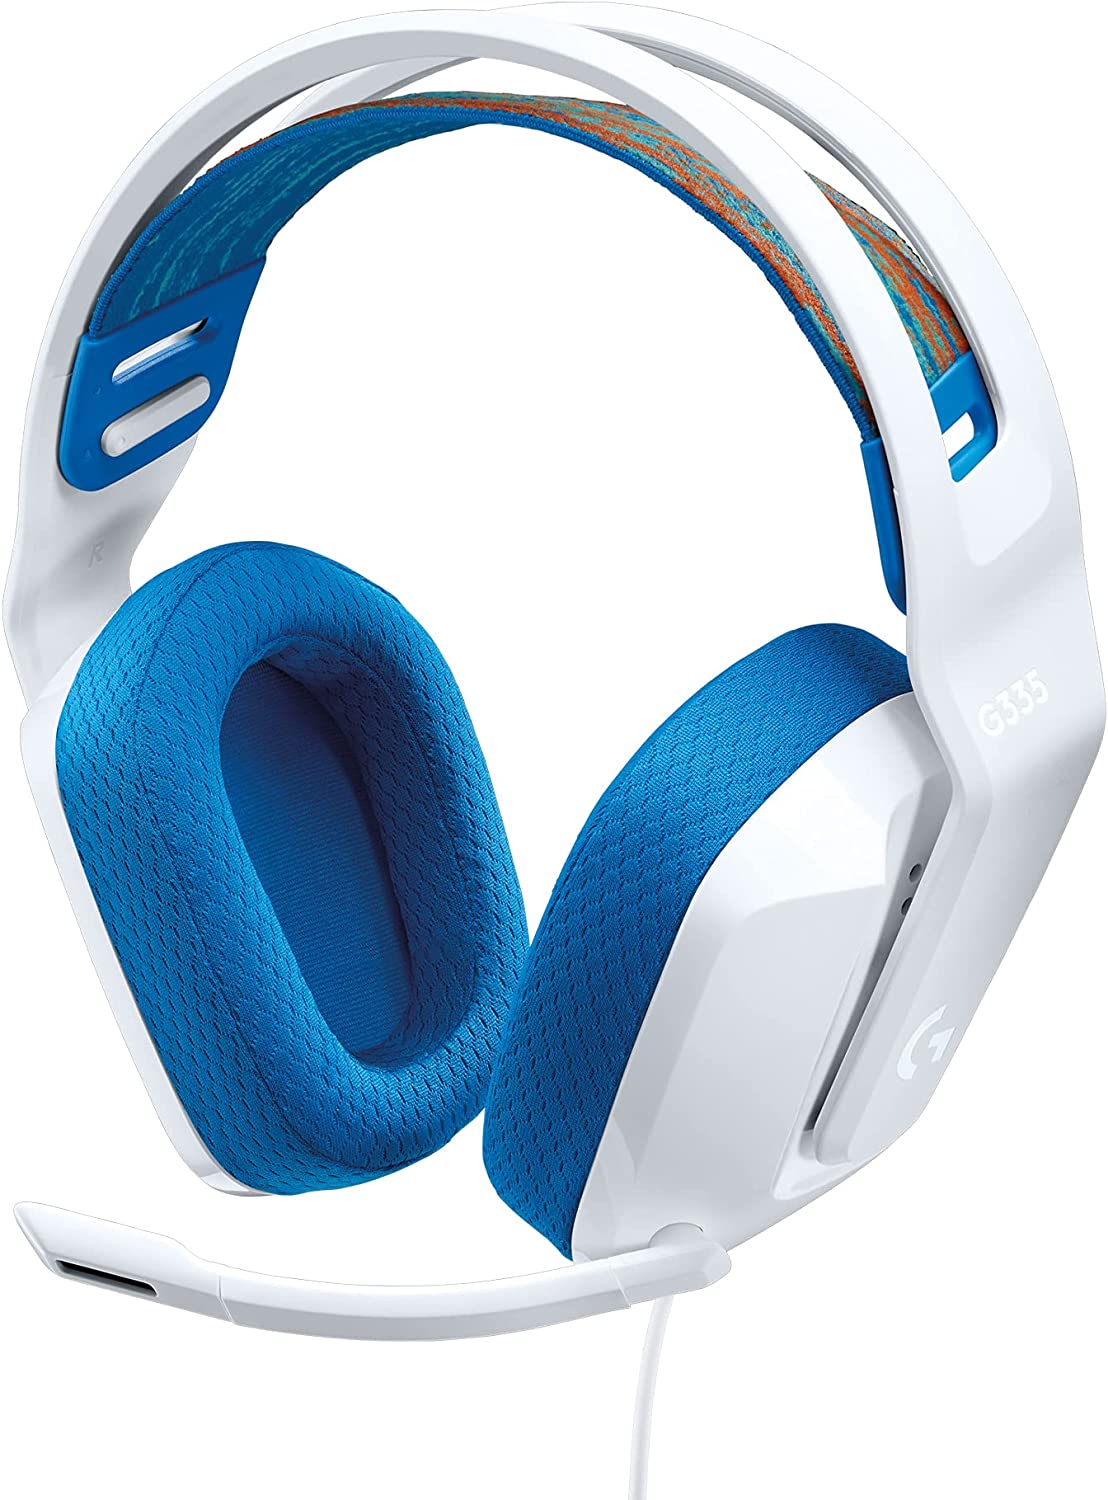 Logitech G335 Wired Gaming Headset - White - Level UpLogitechPC5.10E+12